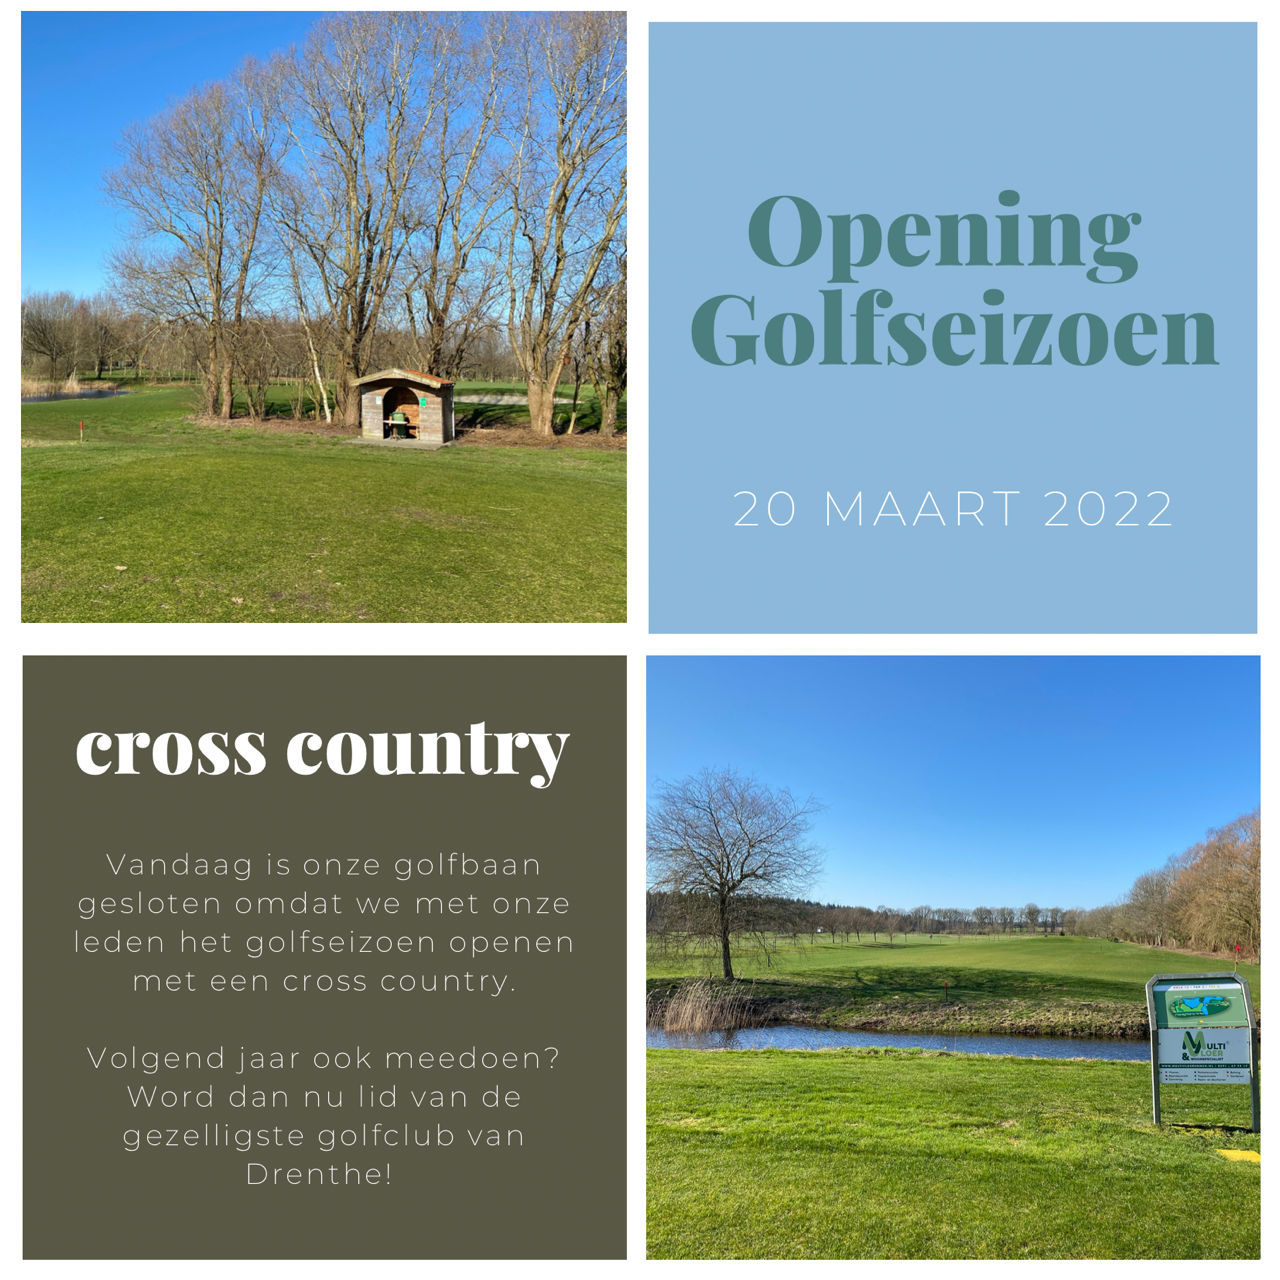 Opening golfseizoen met Cross Country